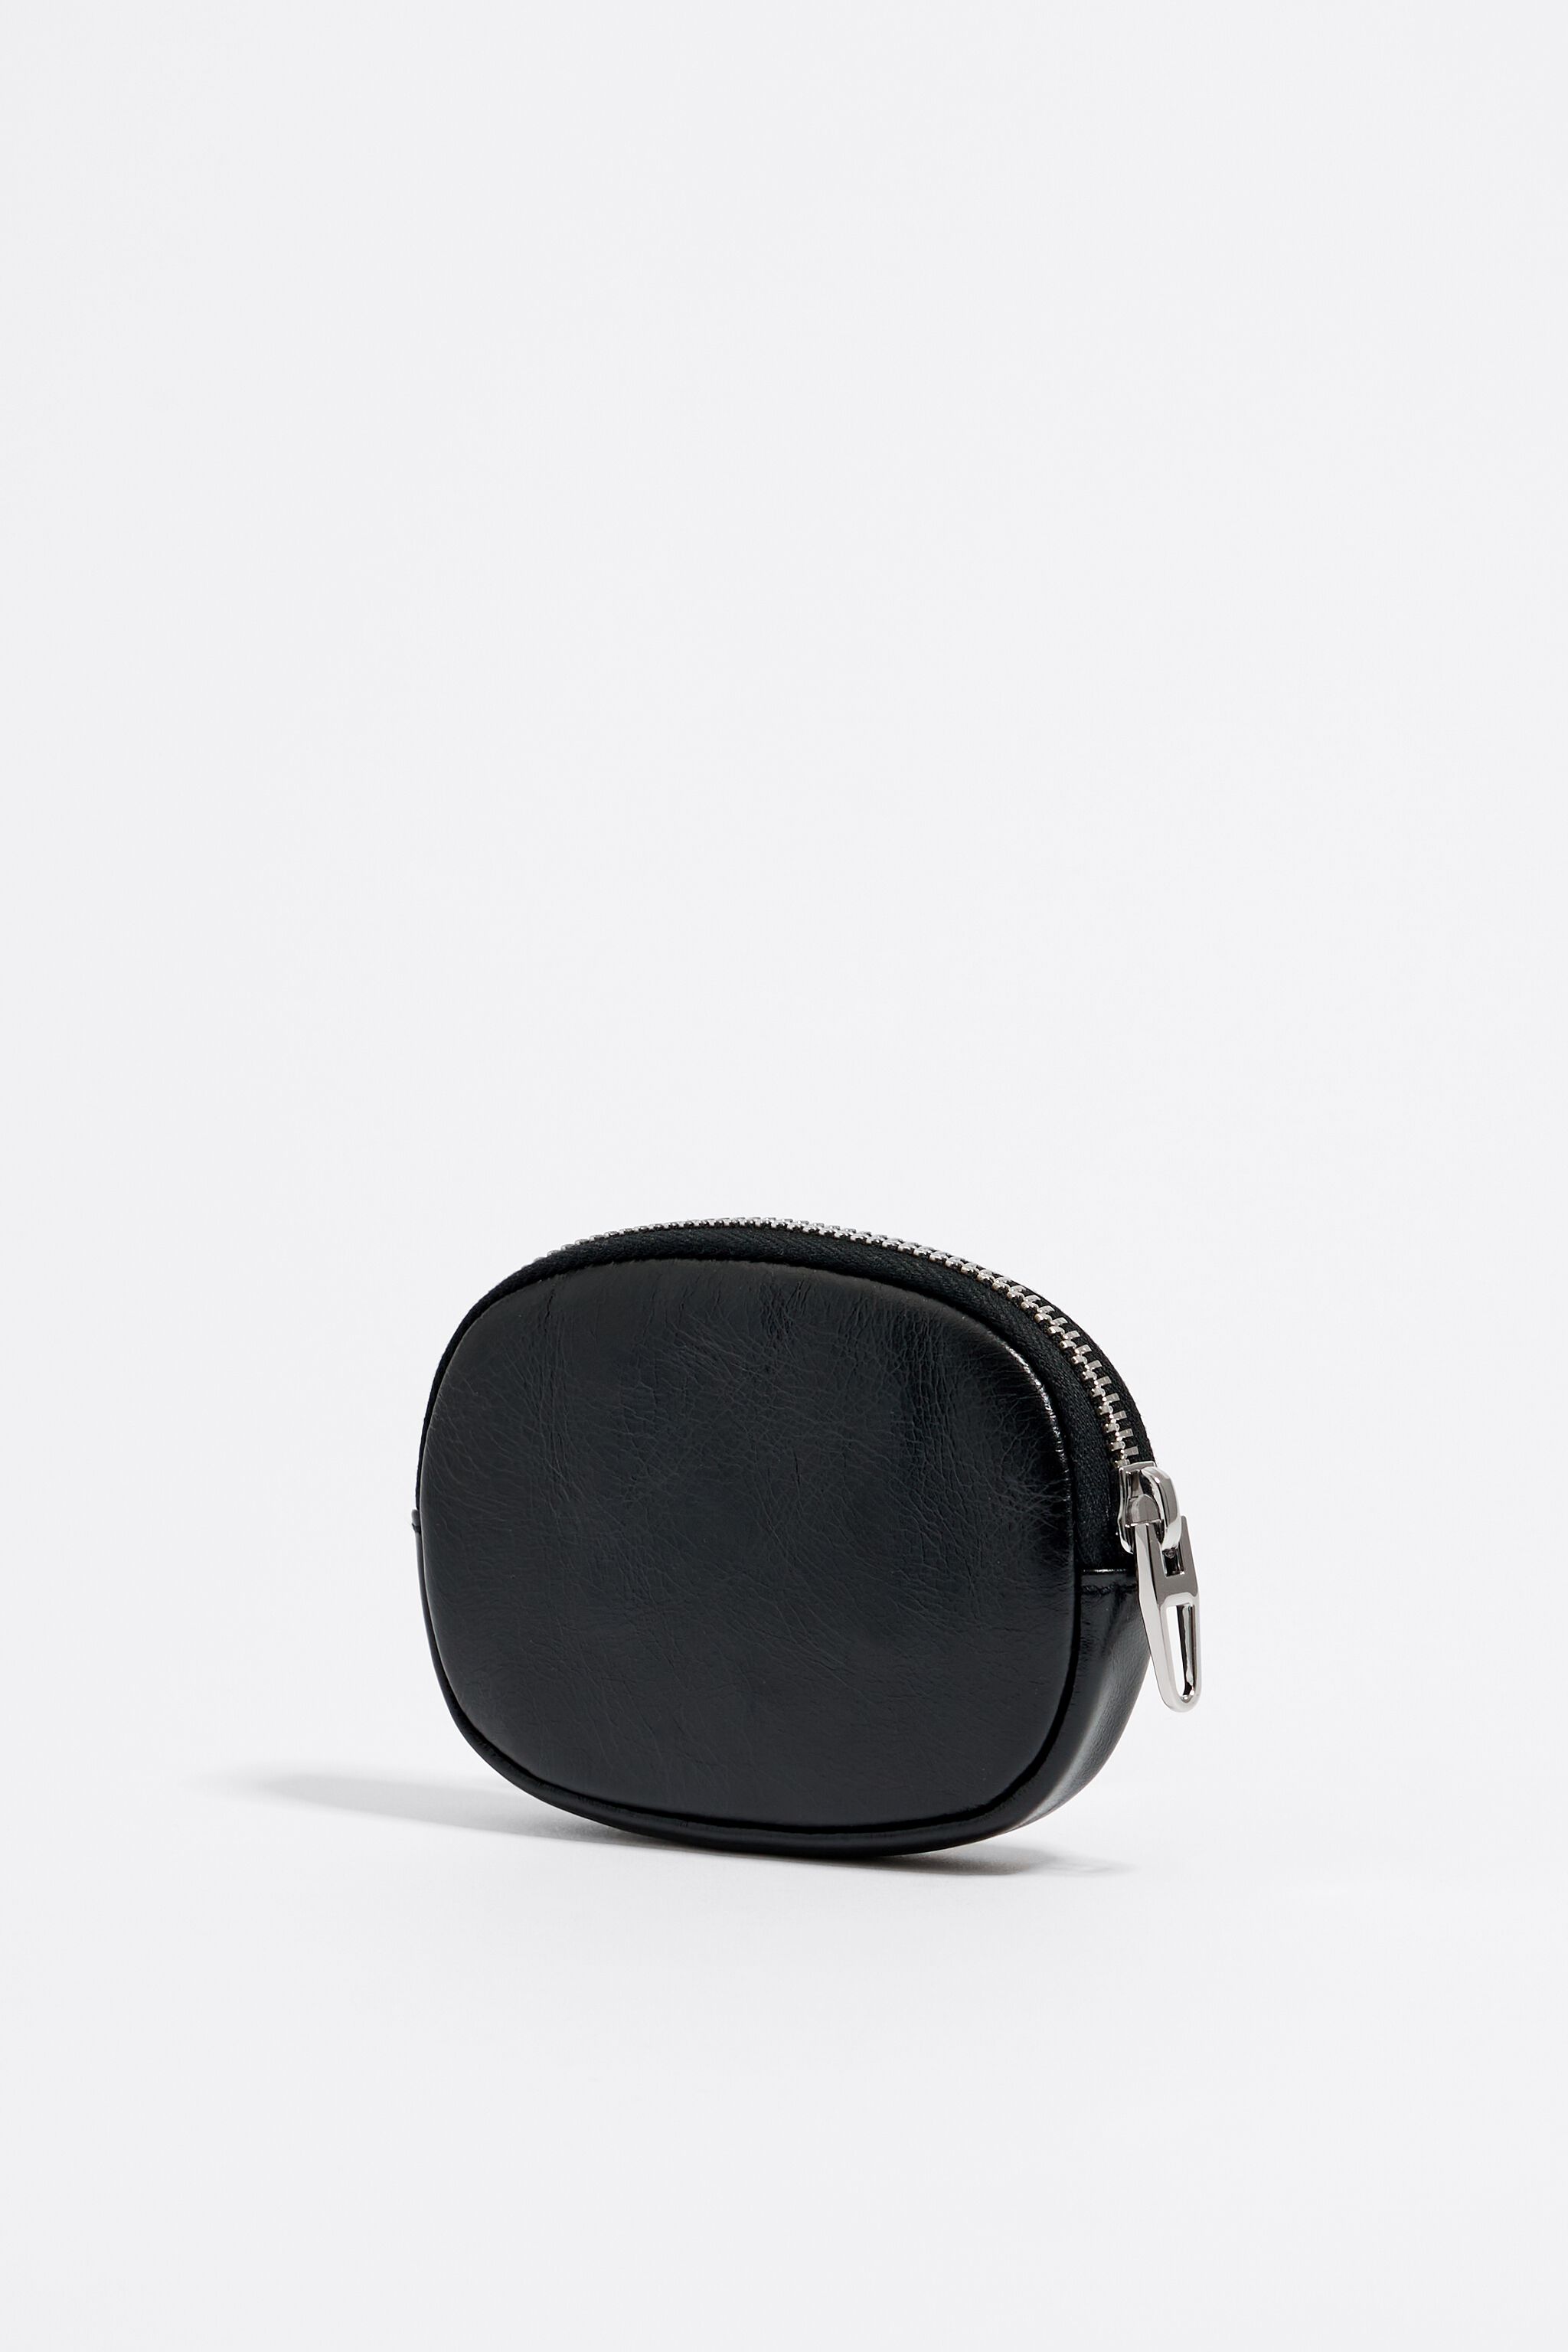 Round coin purse in Nude – Blossom-U